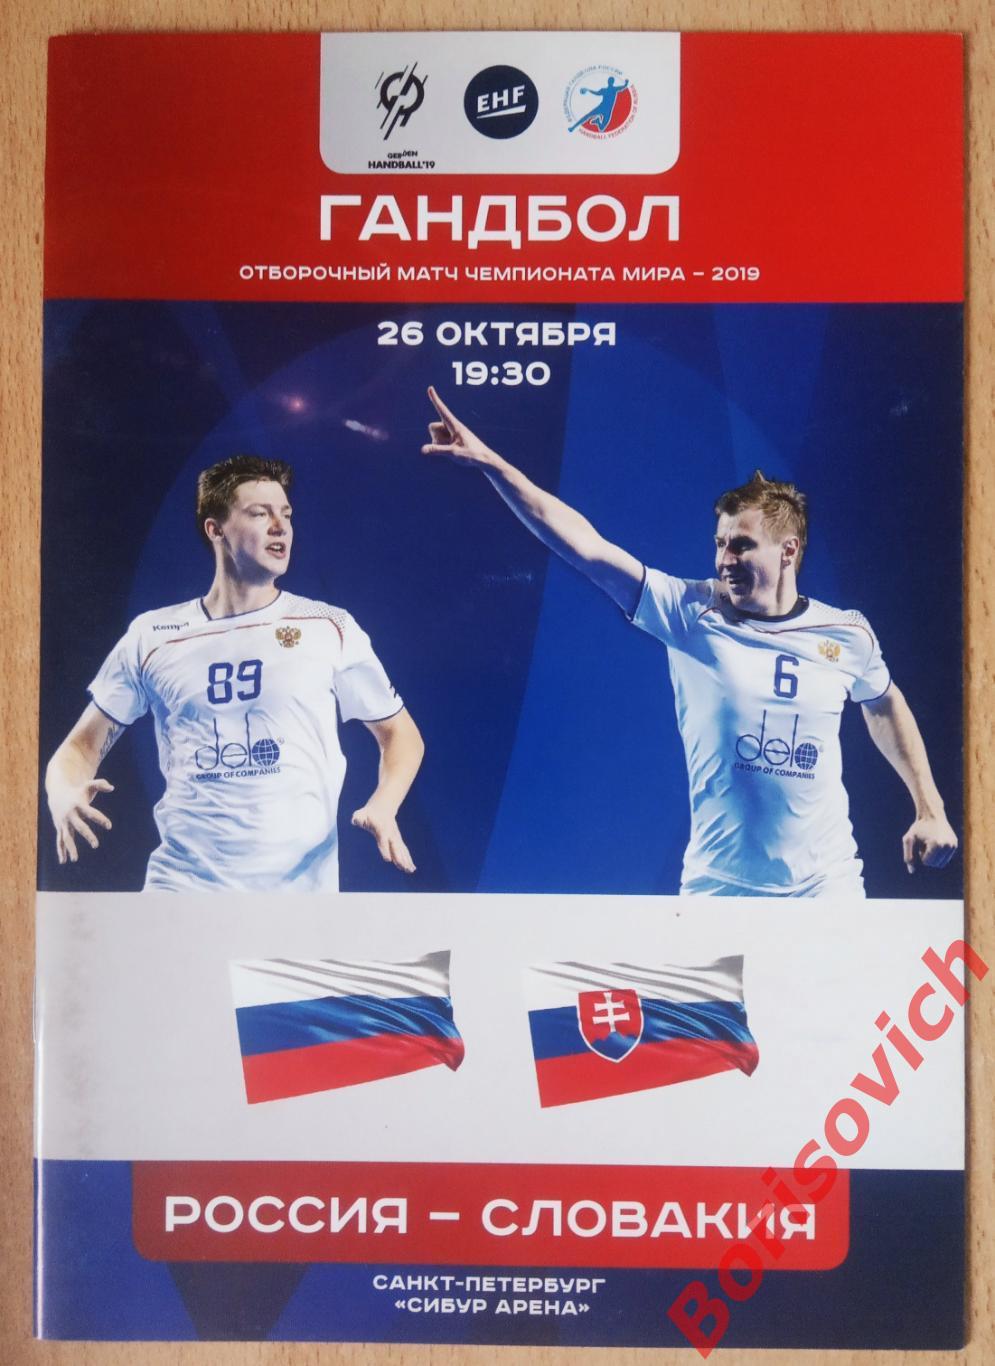 Россия - Словакия 26-10-2017 Отборочный матч чемпионата мира 2019.